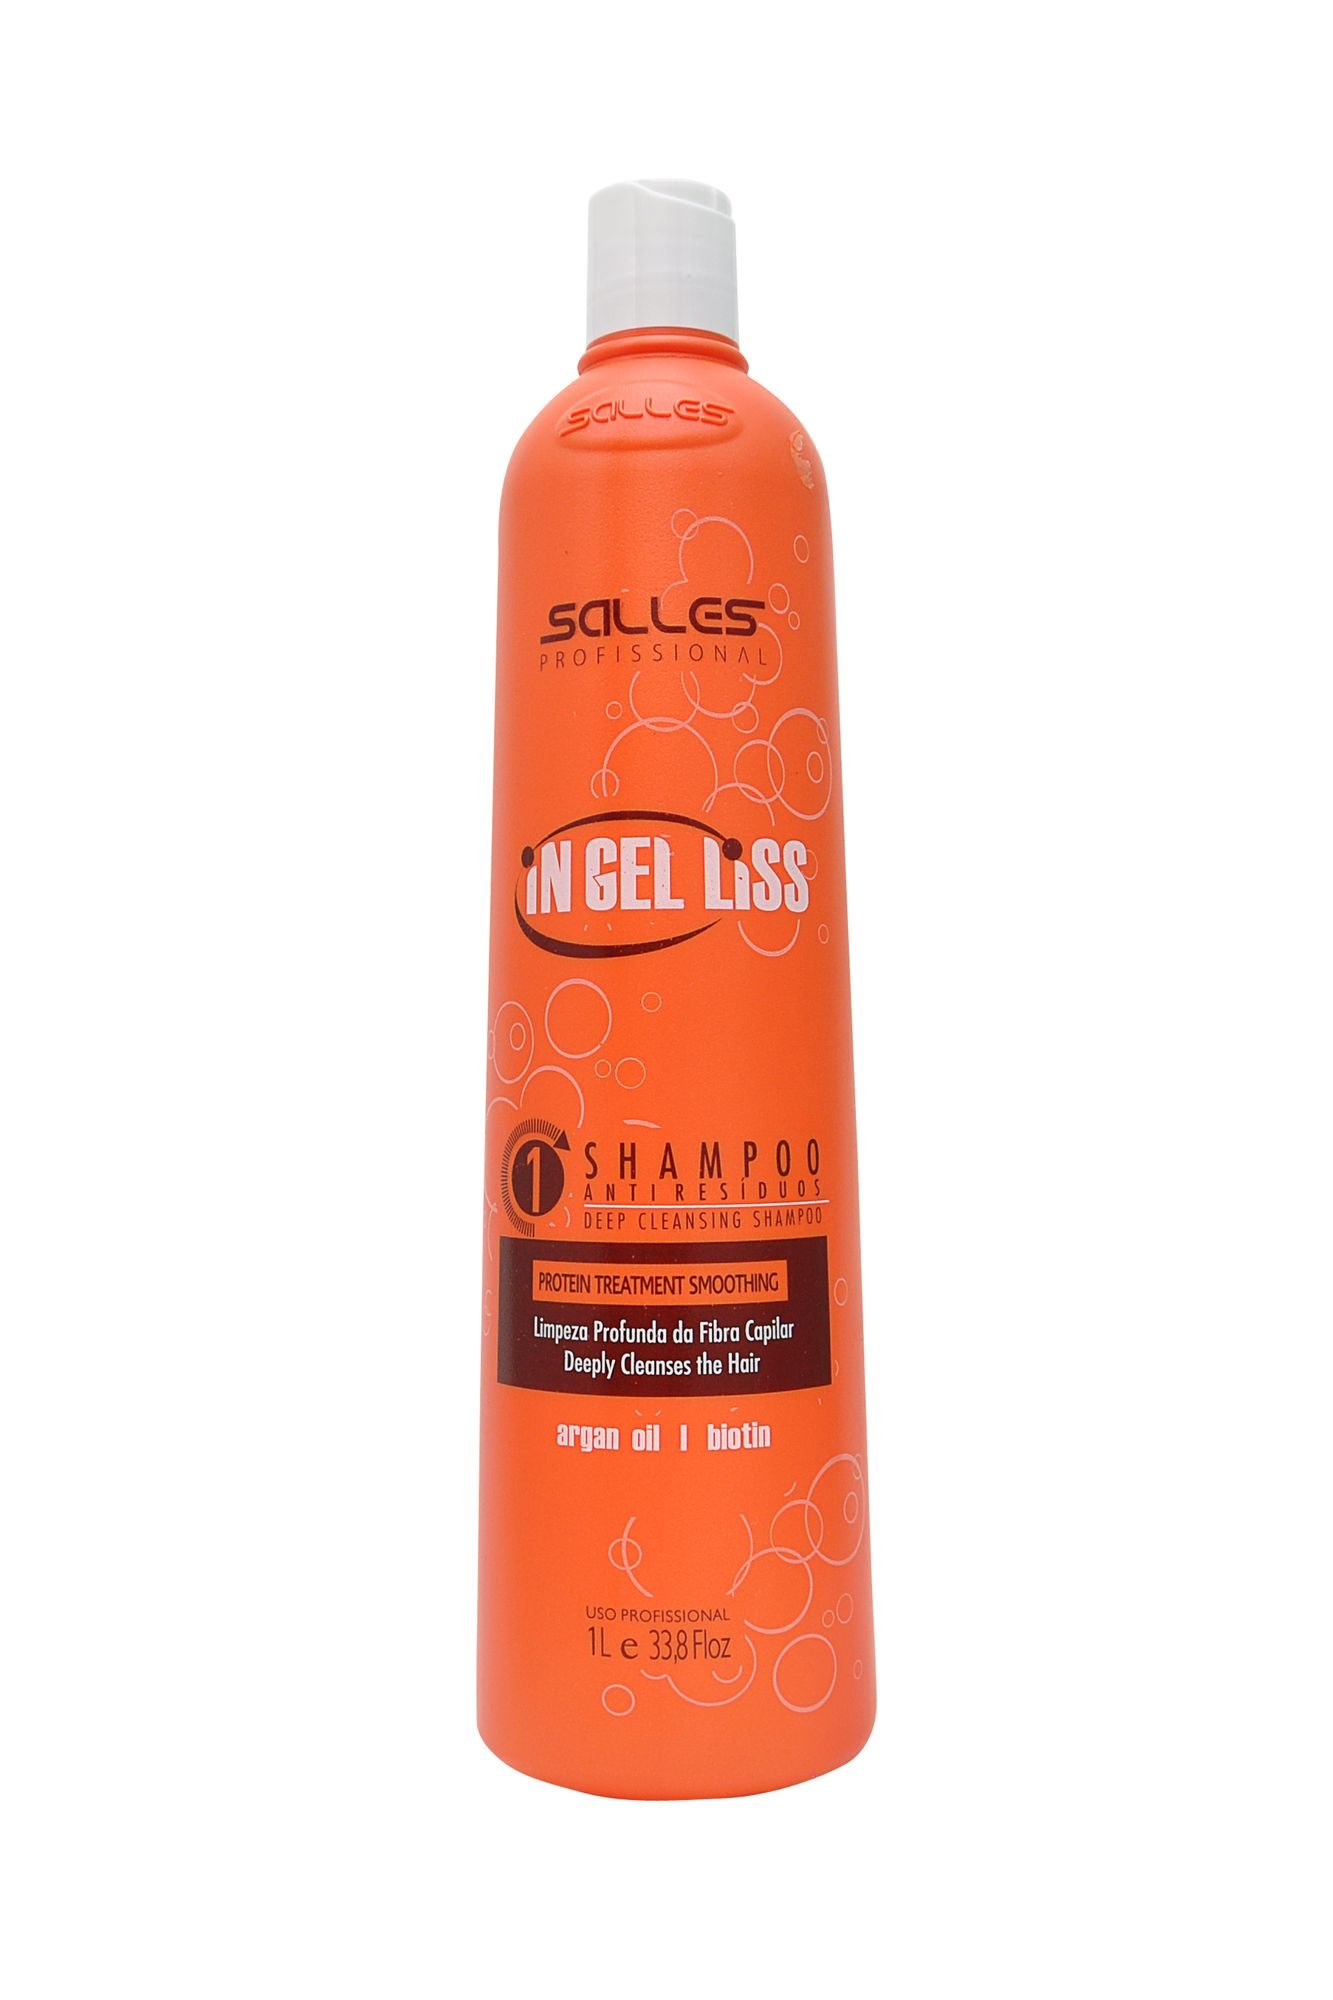 Shampoo Anti Resíduo In Gel Liss Salles Profissional 1lt 1L 1